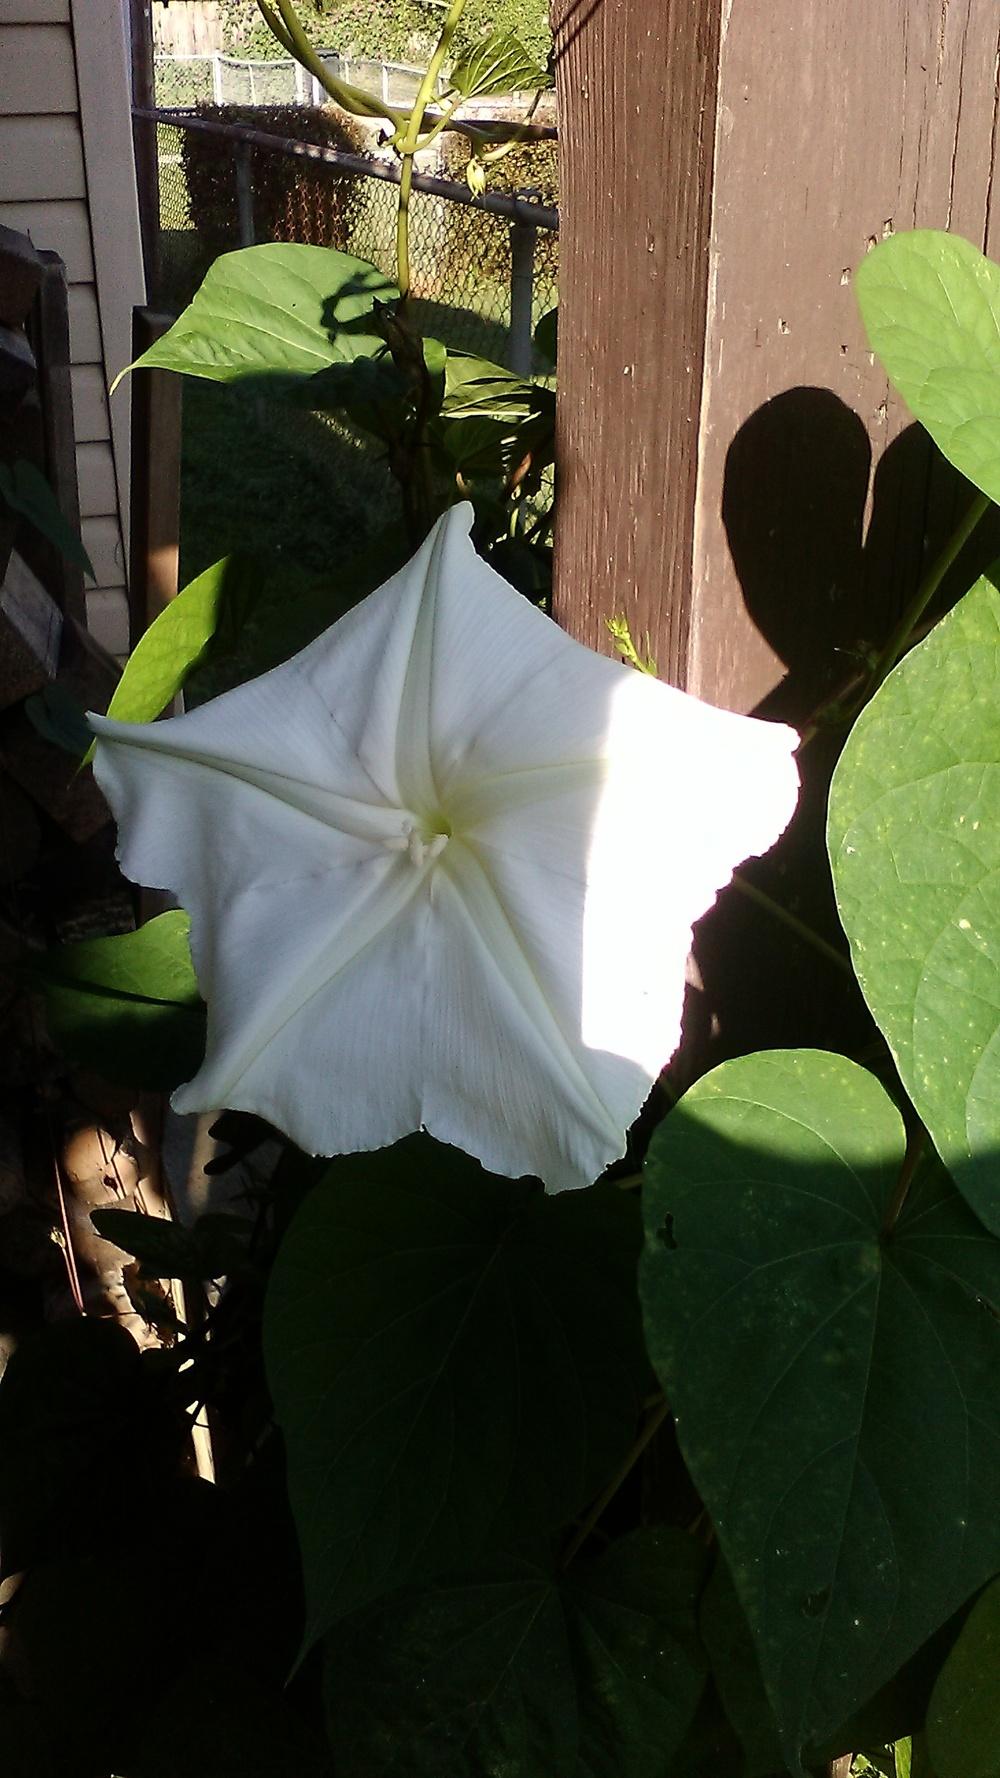 Photo of Moonflower (Ipomoea alba) uploaded by m33jones2